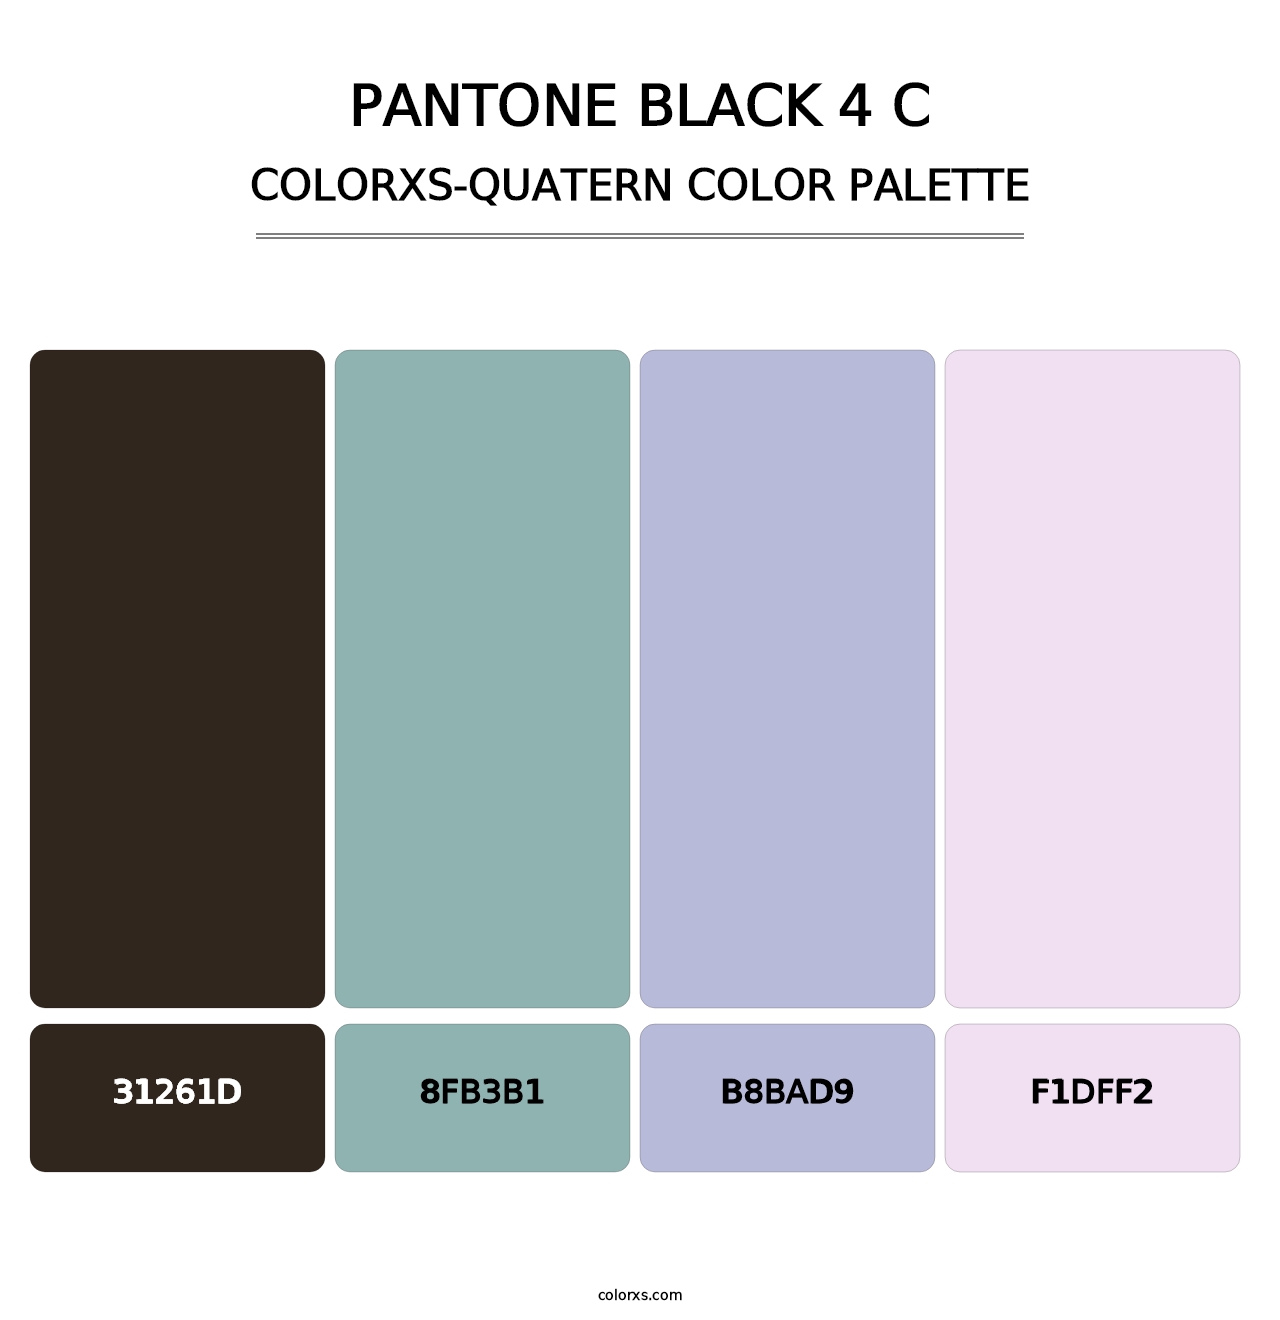 PANTONE Black 4 C - Colorxs Quatern Palette